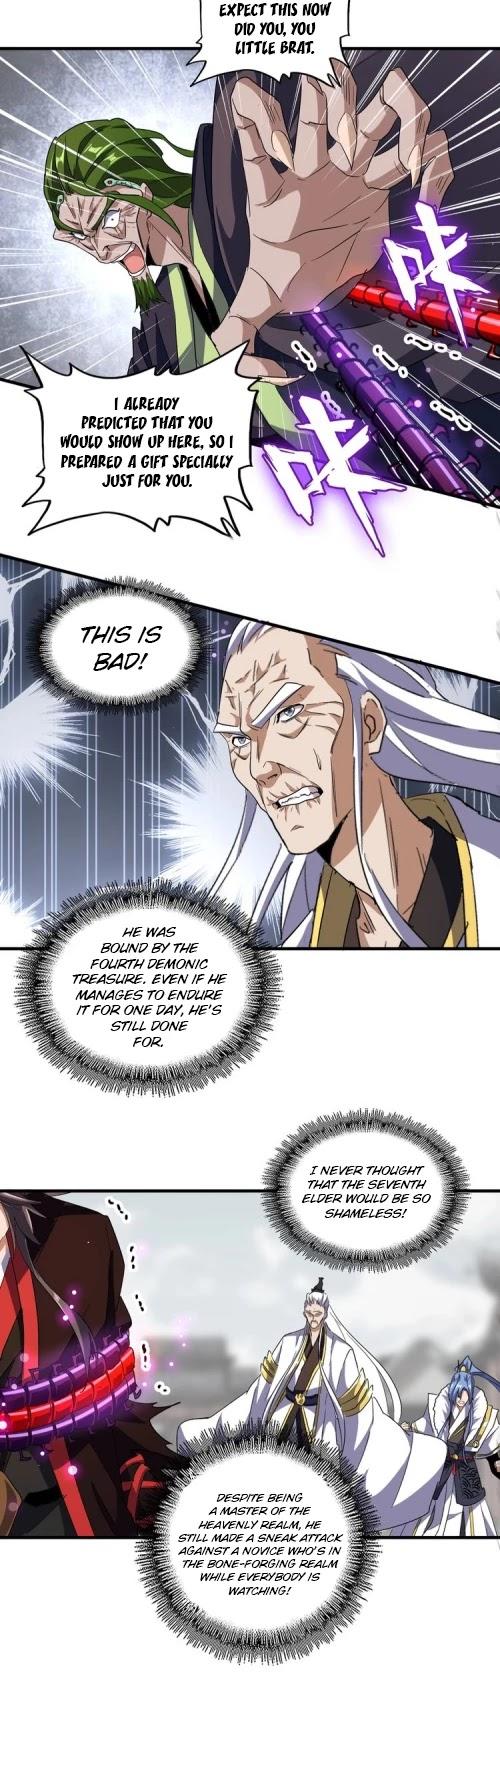 Magic Emperor Chapter 96 page 4 - Mangakakalot